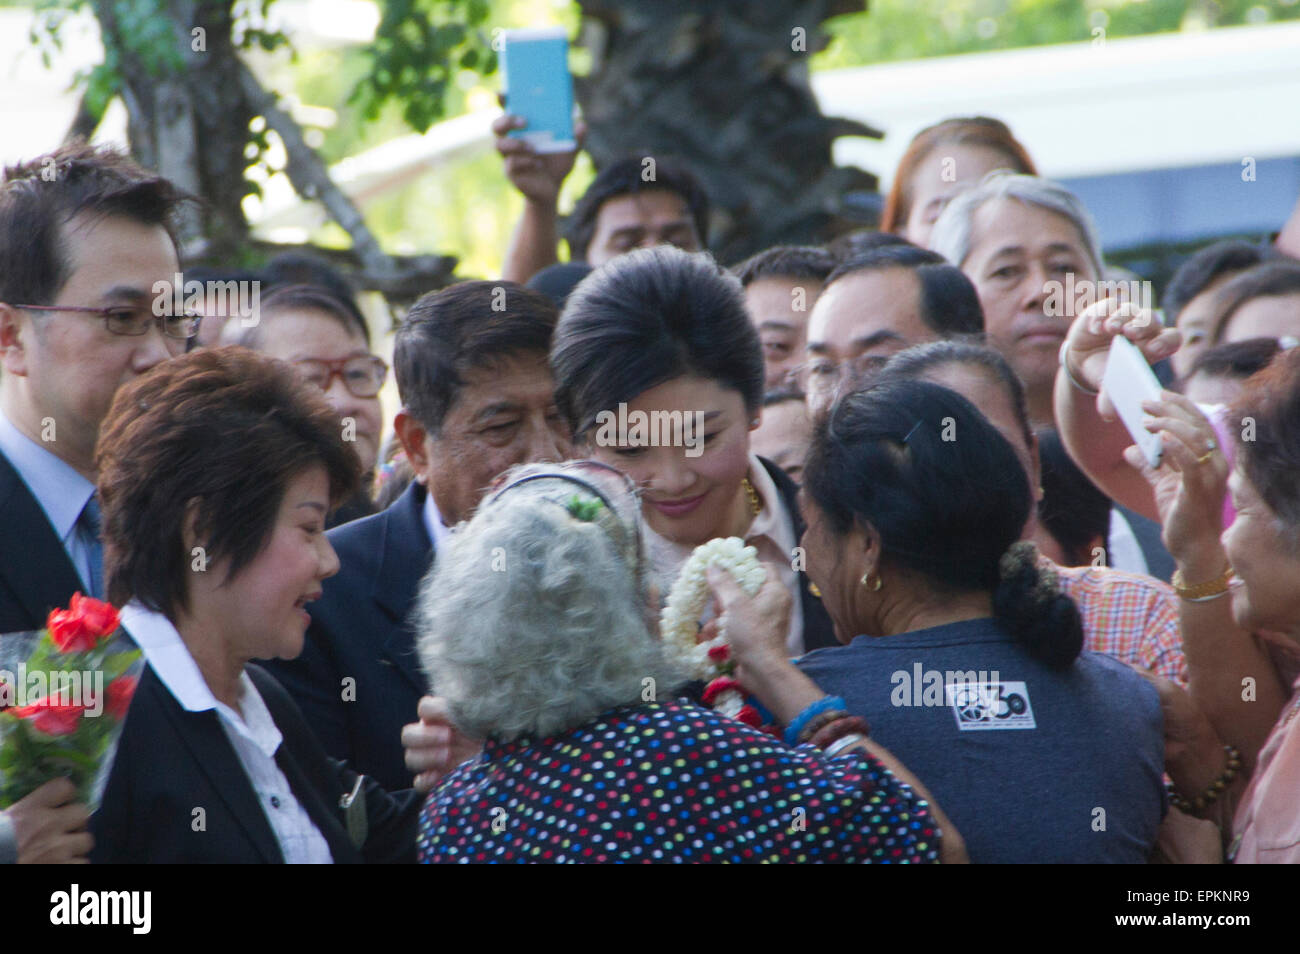 Bangkok, Thailand. 19. Mai 2015. Ehemaliger Premierminister Yingluck Shinawatra kam beim Obersten Gerichtshof am Dienstagmorgen um Öffnung Vernehmung der Pflichtverletzung-of-Duty-Fall bezüglich ihrer Regierung Reis Verpfändung.   Am Montag sagte Surasak Trirattrakul, Anfrage Direktor des Büros des Generalstaatsanwalts, Strafkammer des Obersten Gerichtshofs für Inhaber von politischen Positionen bestellt Frau Yingluck am 09:30 angezeigt werden, die Gebühren zu hören und geben ihr Plädoyer. Sie war voraussichtlich nicht vor Gericht schuldig. Bildnachweis: PixelPro/Alamy Live-Nachrichten Stockfoto